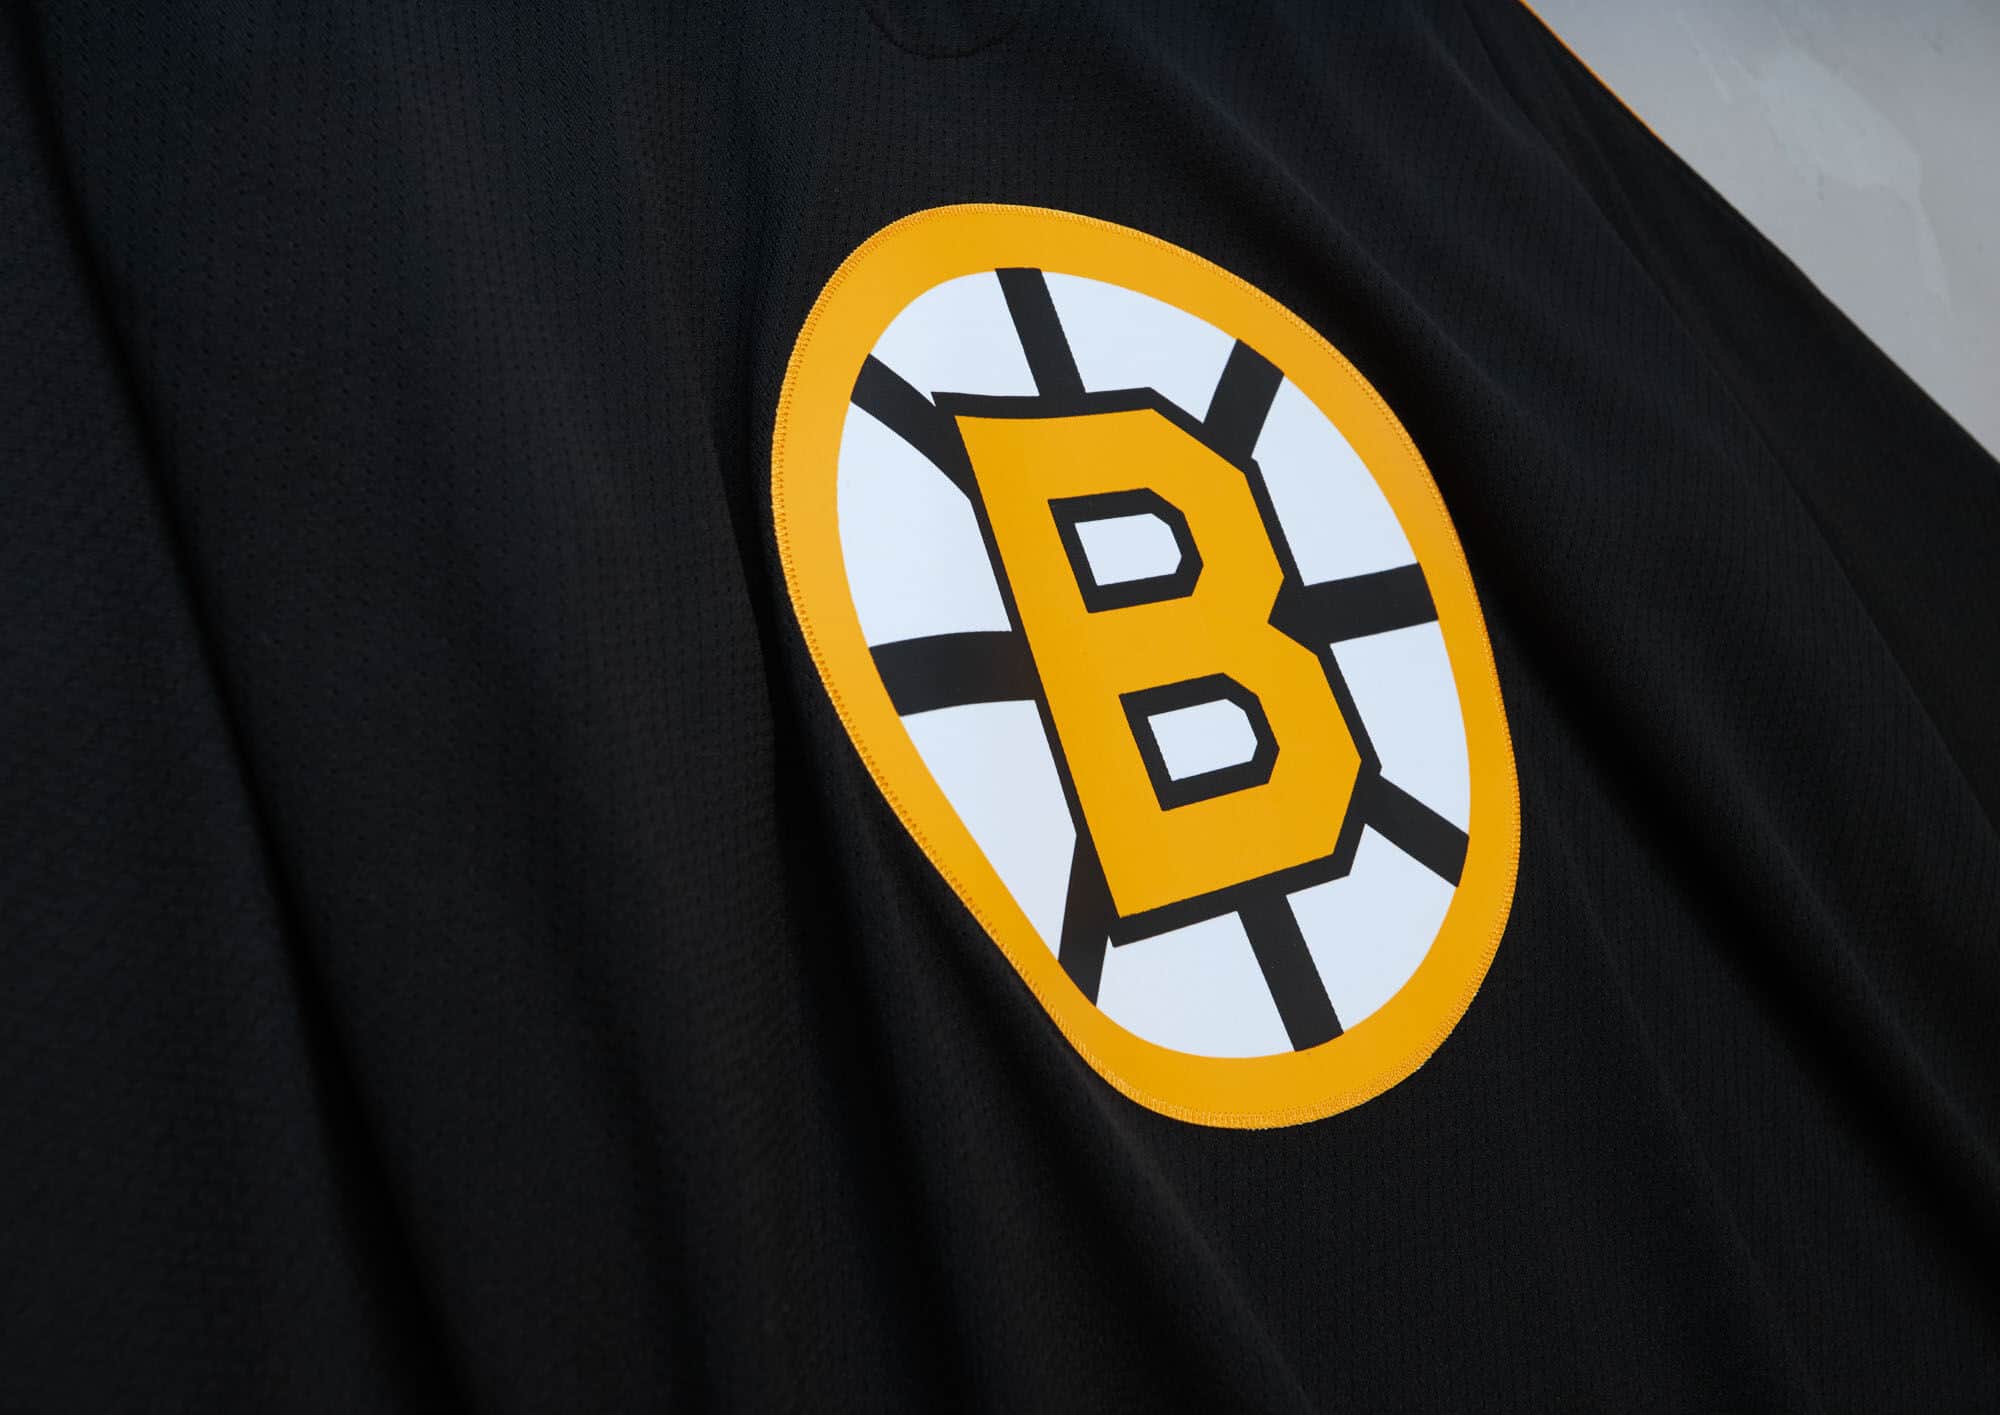 Jerseys - Boston Bruins Mitchell & Ness Nostalgia Co.